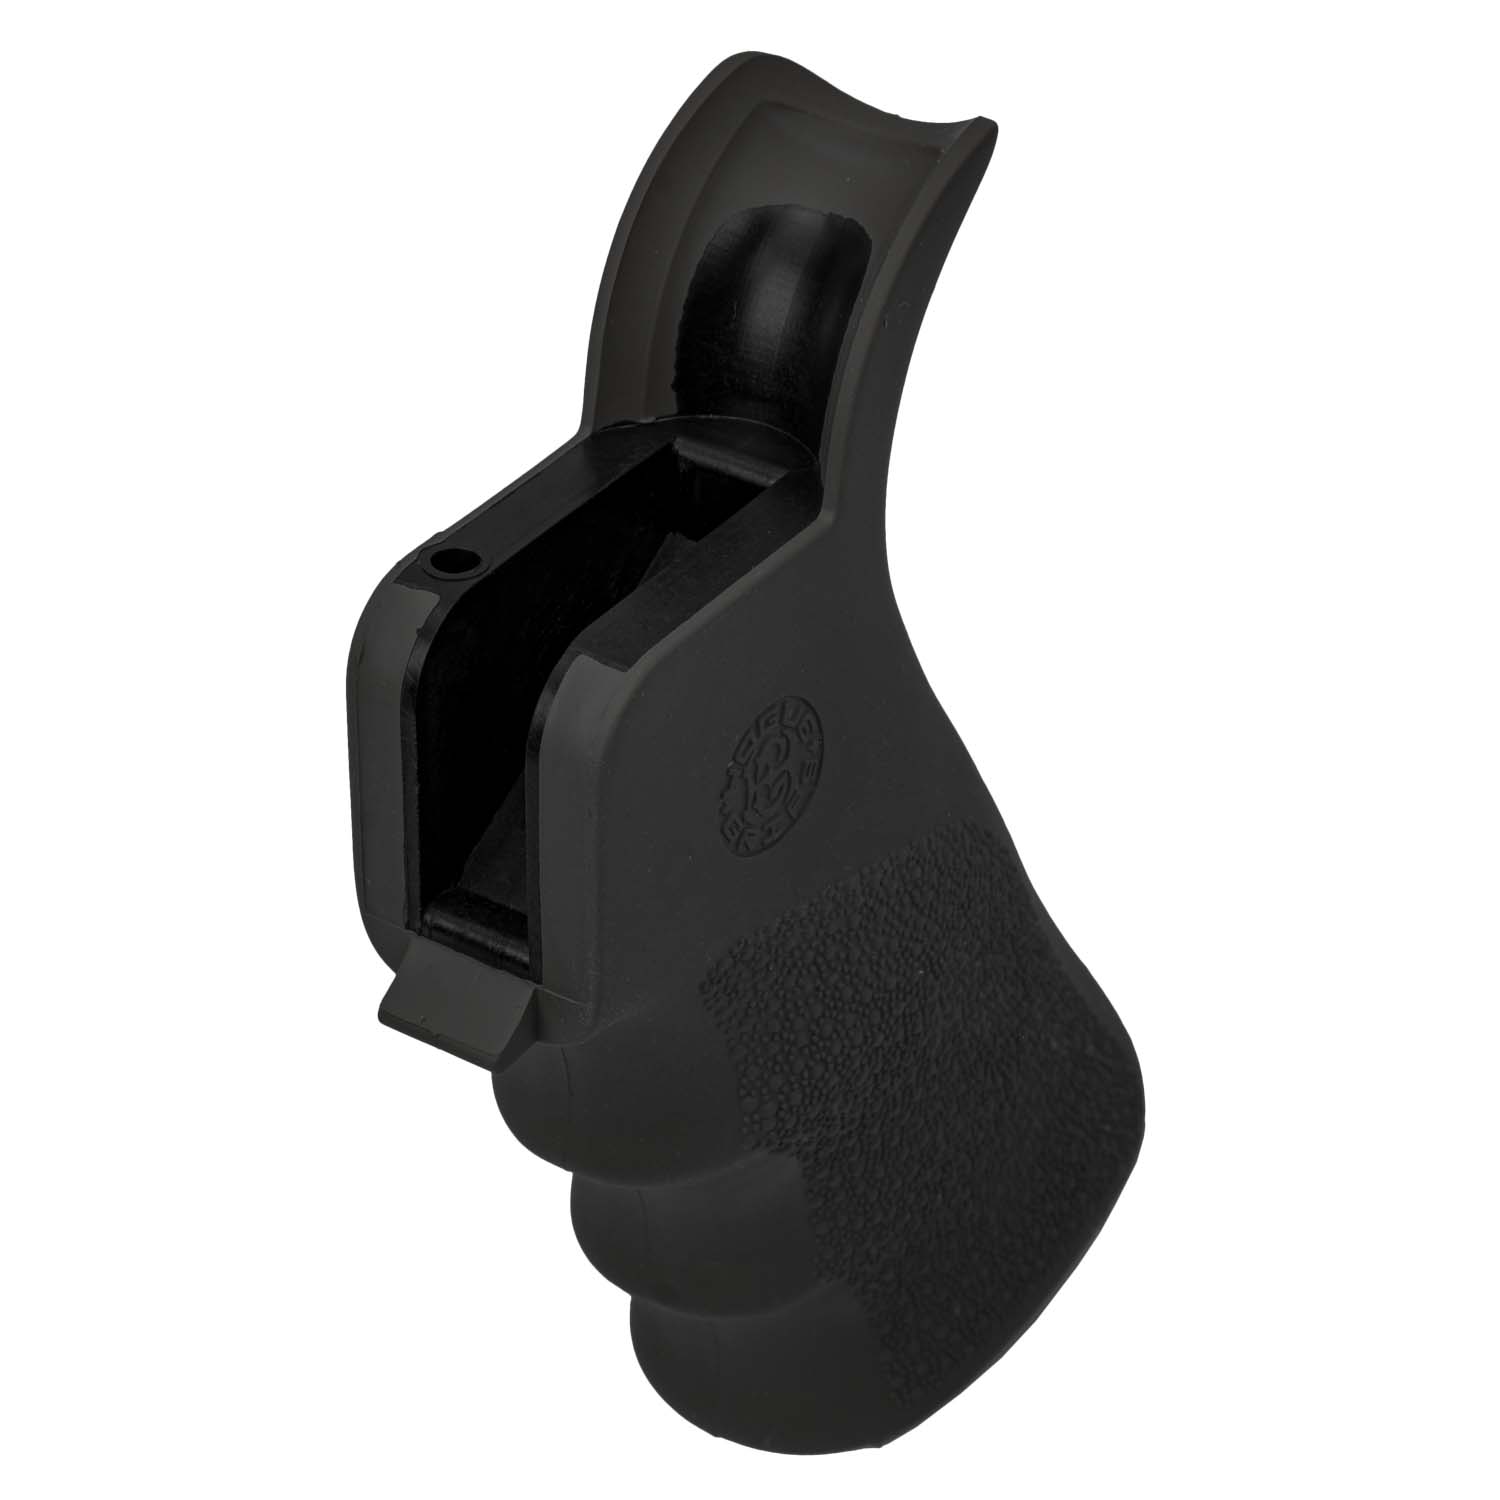 Hogue OverMolded Beavertail Pistol Grip AR-15 Finger Grooves Rubber